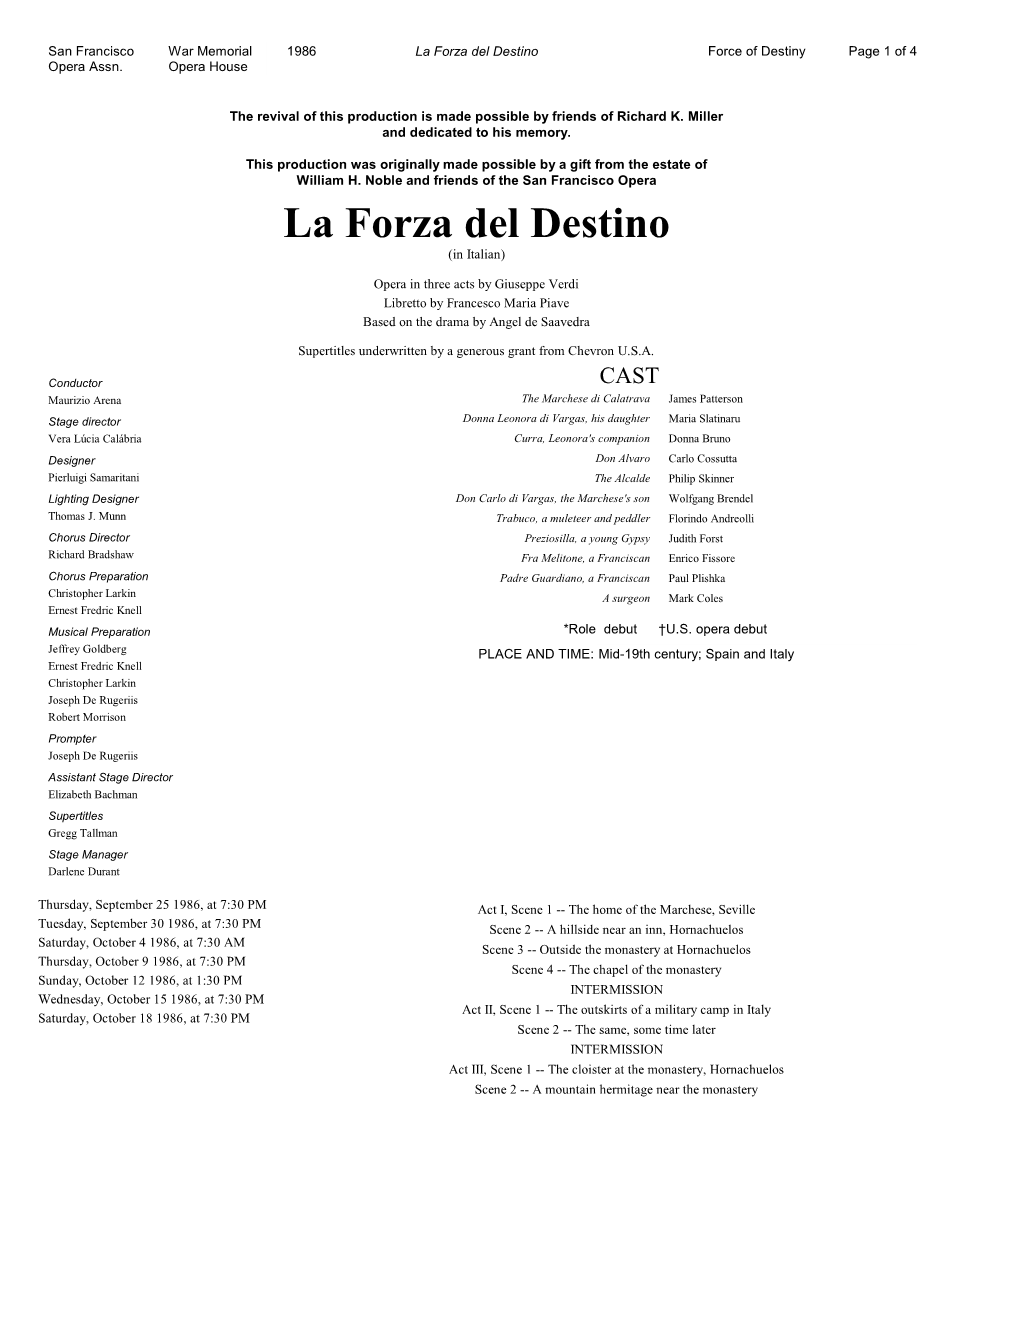 La Forza Del Destino Force of Destiny Page 1 of 4 Opera Assn